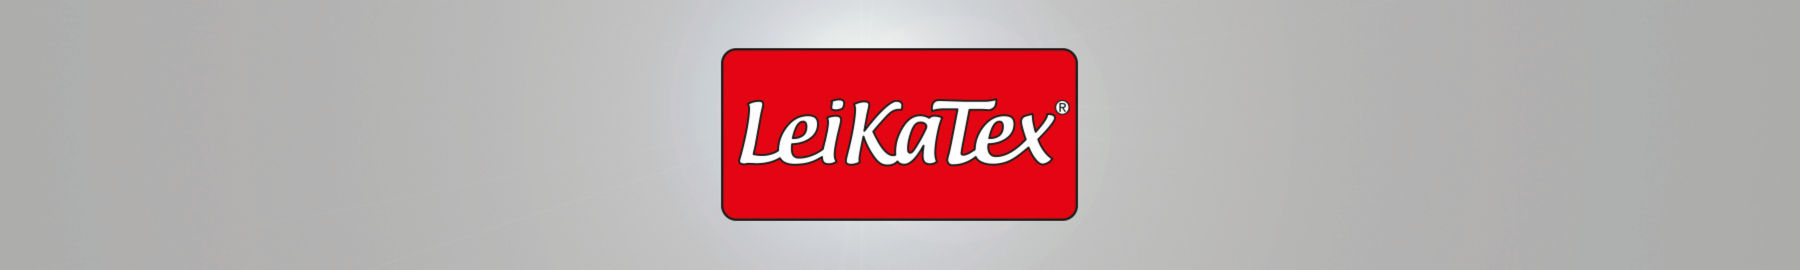 LeiKaTex®